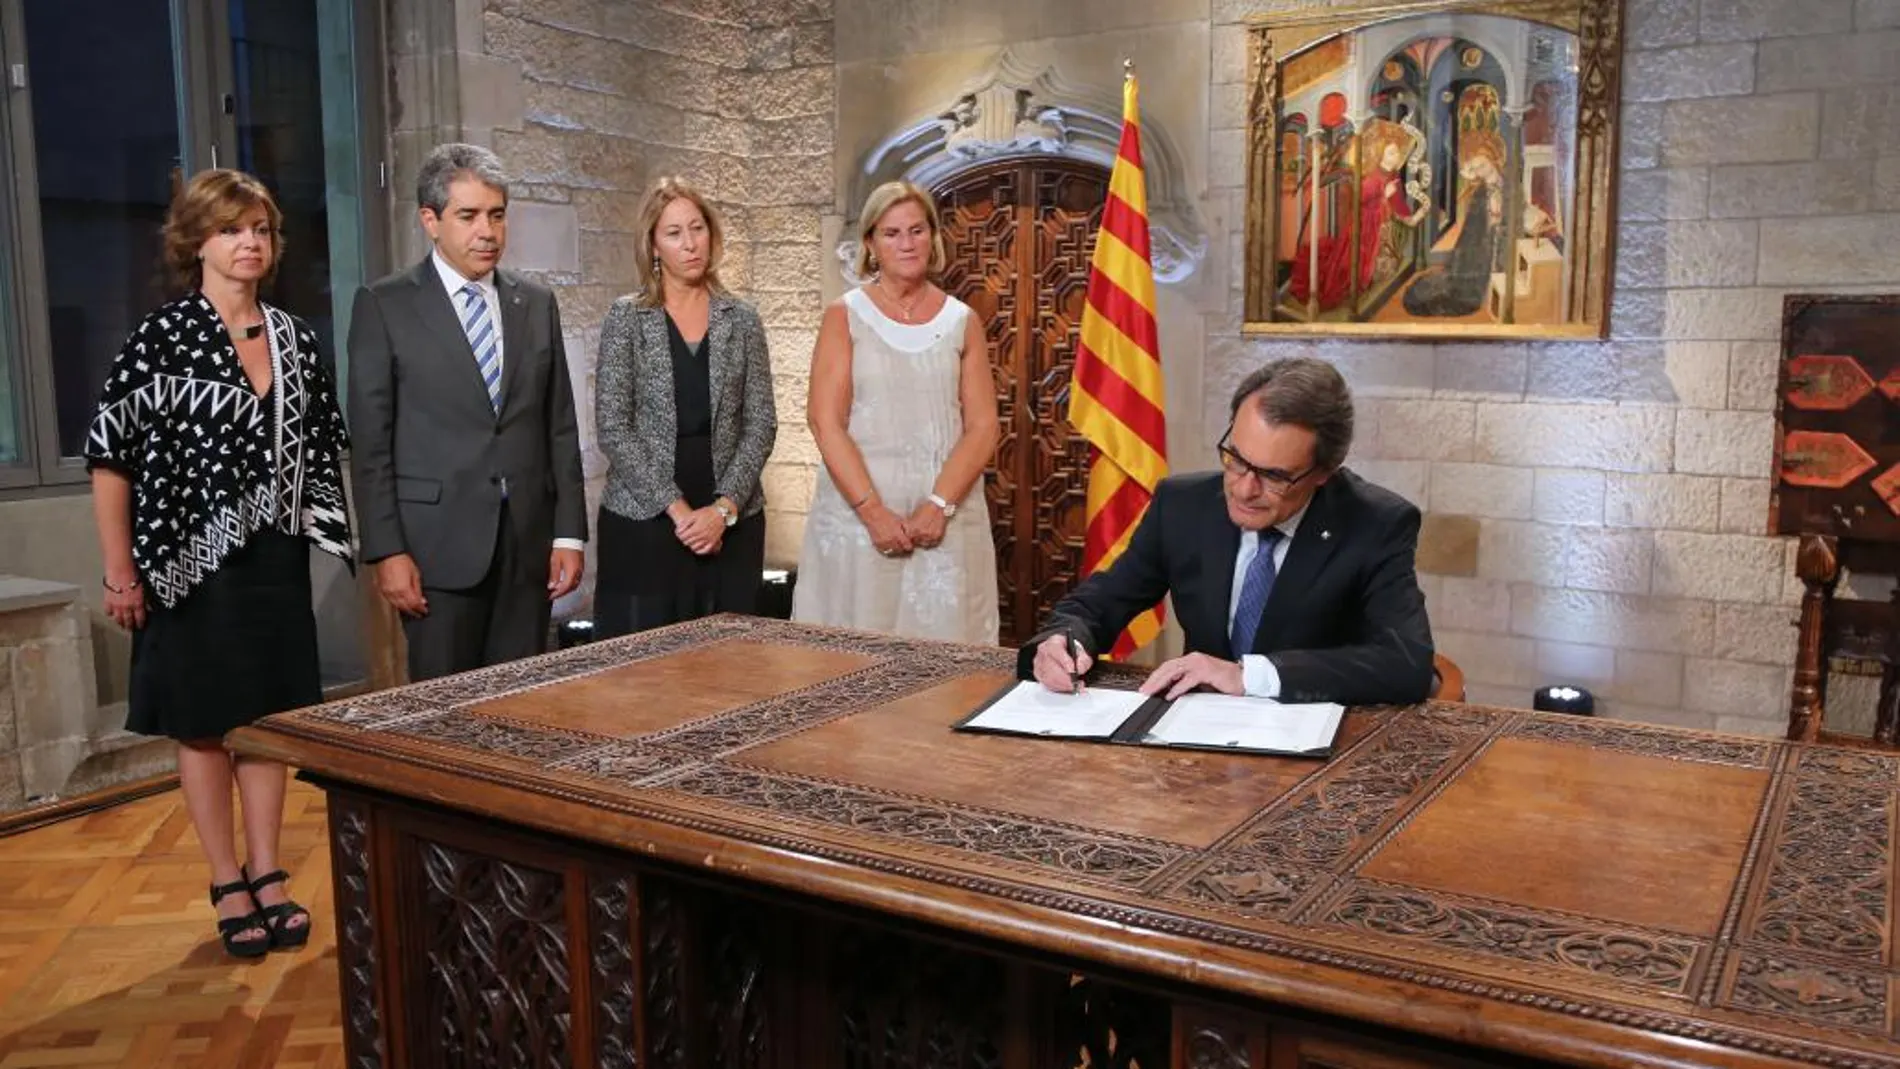 Mas firma ayer el decreto de convocatoria por la independencia de Cataluña del 27 de septiembre